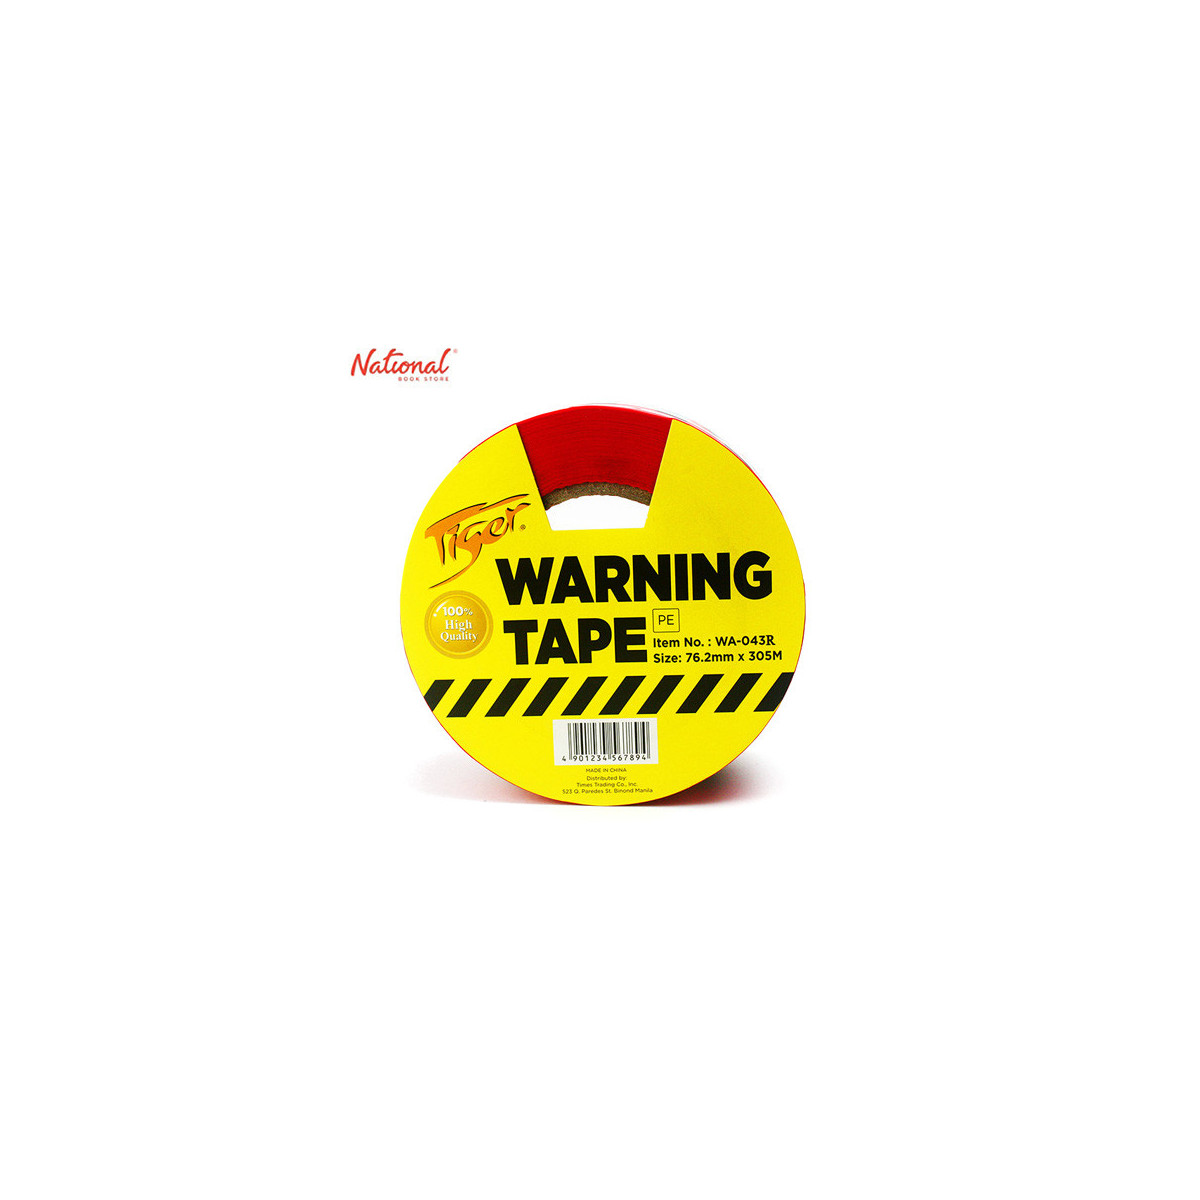 TIGER WARNING TAPE WA043R RED 76.2X305M